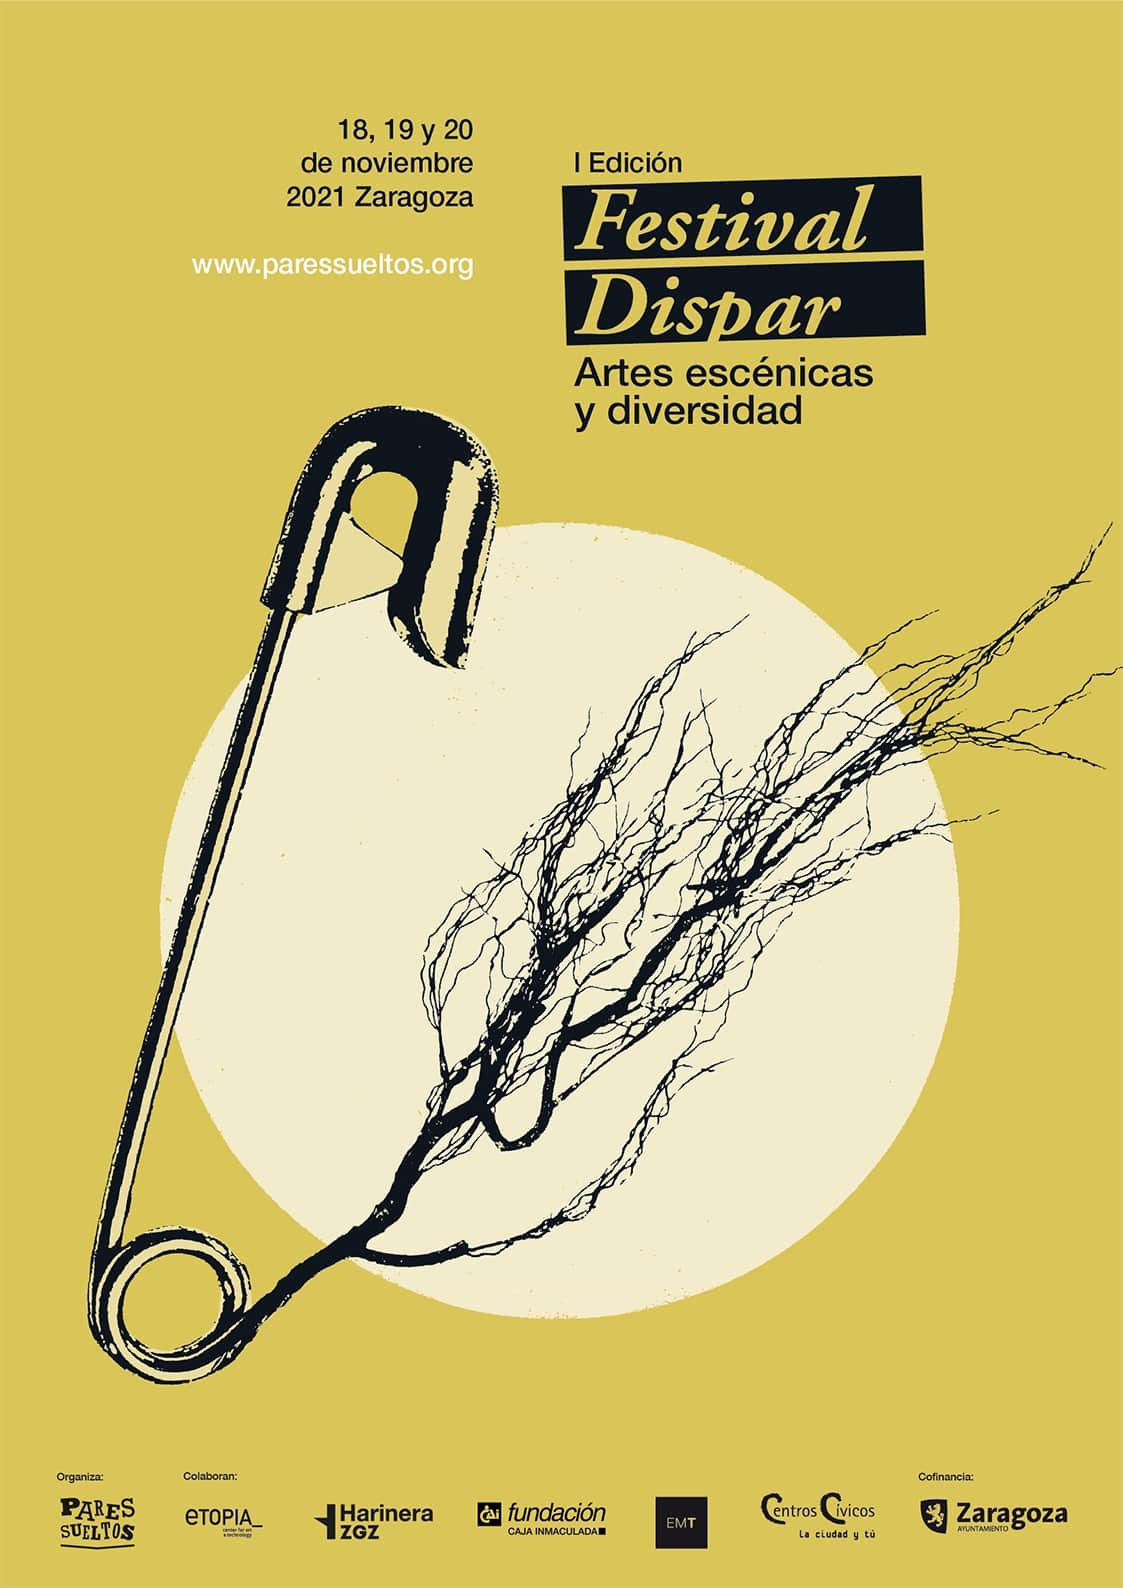 Cartel del Festival Dispar, 18, 19 y 20 de noviembre en Zaragoza, con un montaje de un imperdible con raíces